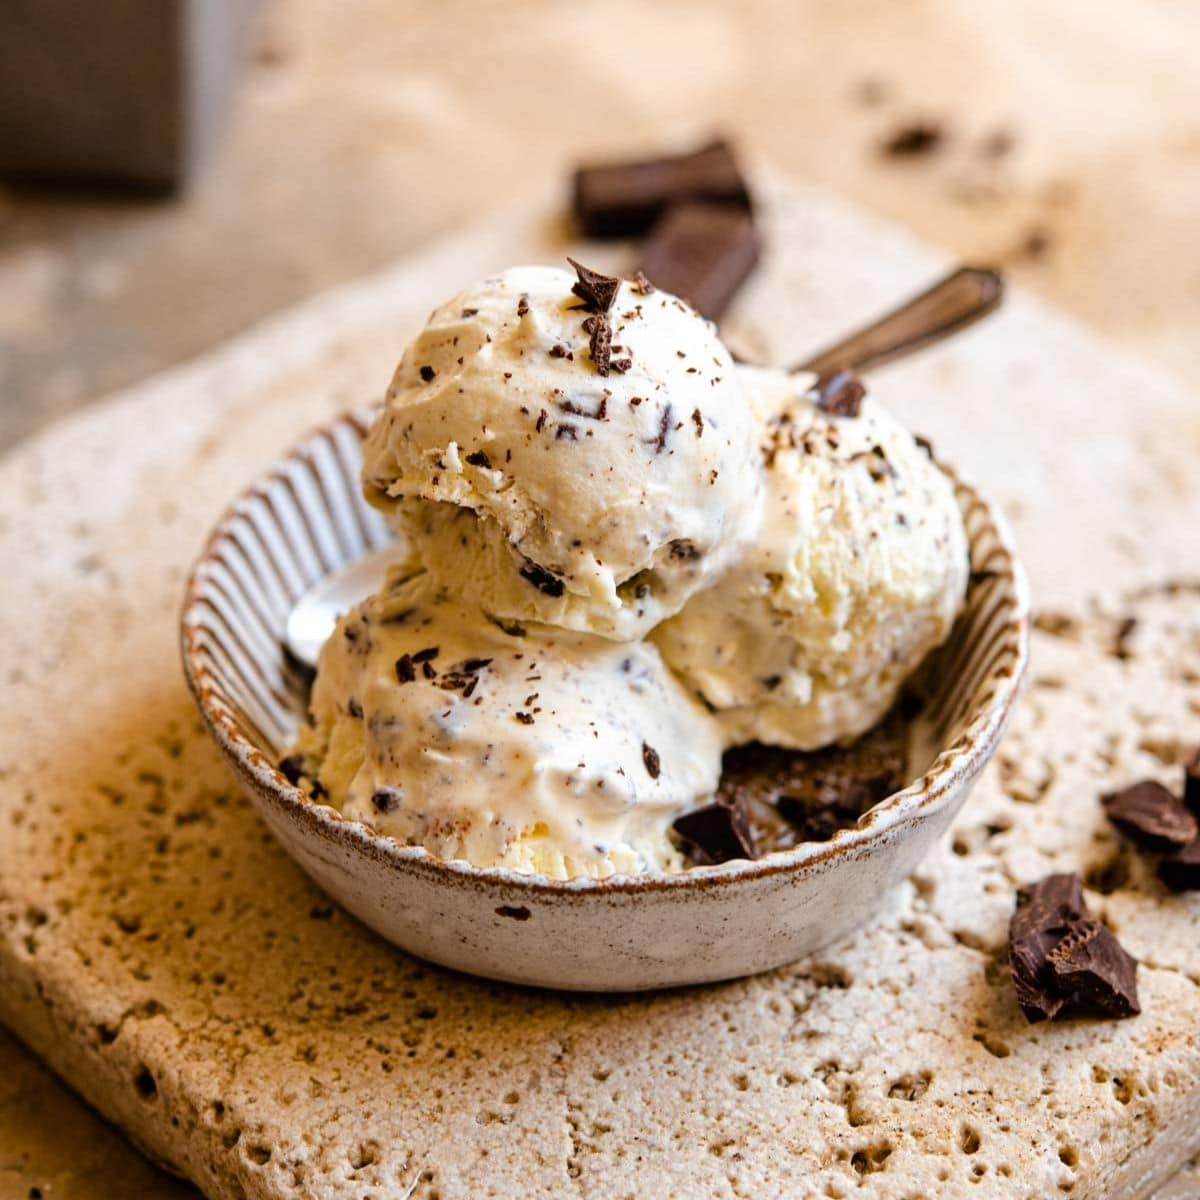 klassisches stracciatella gelato in bunter schale mit schokolade